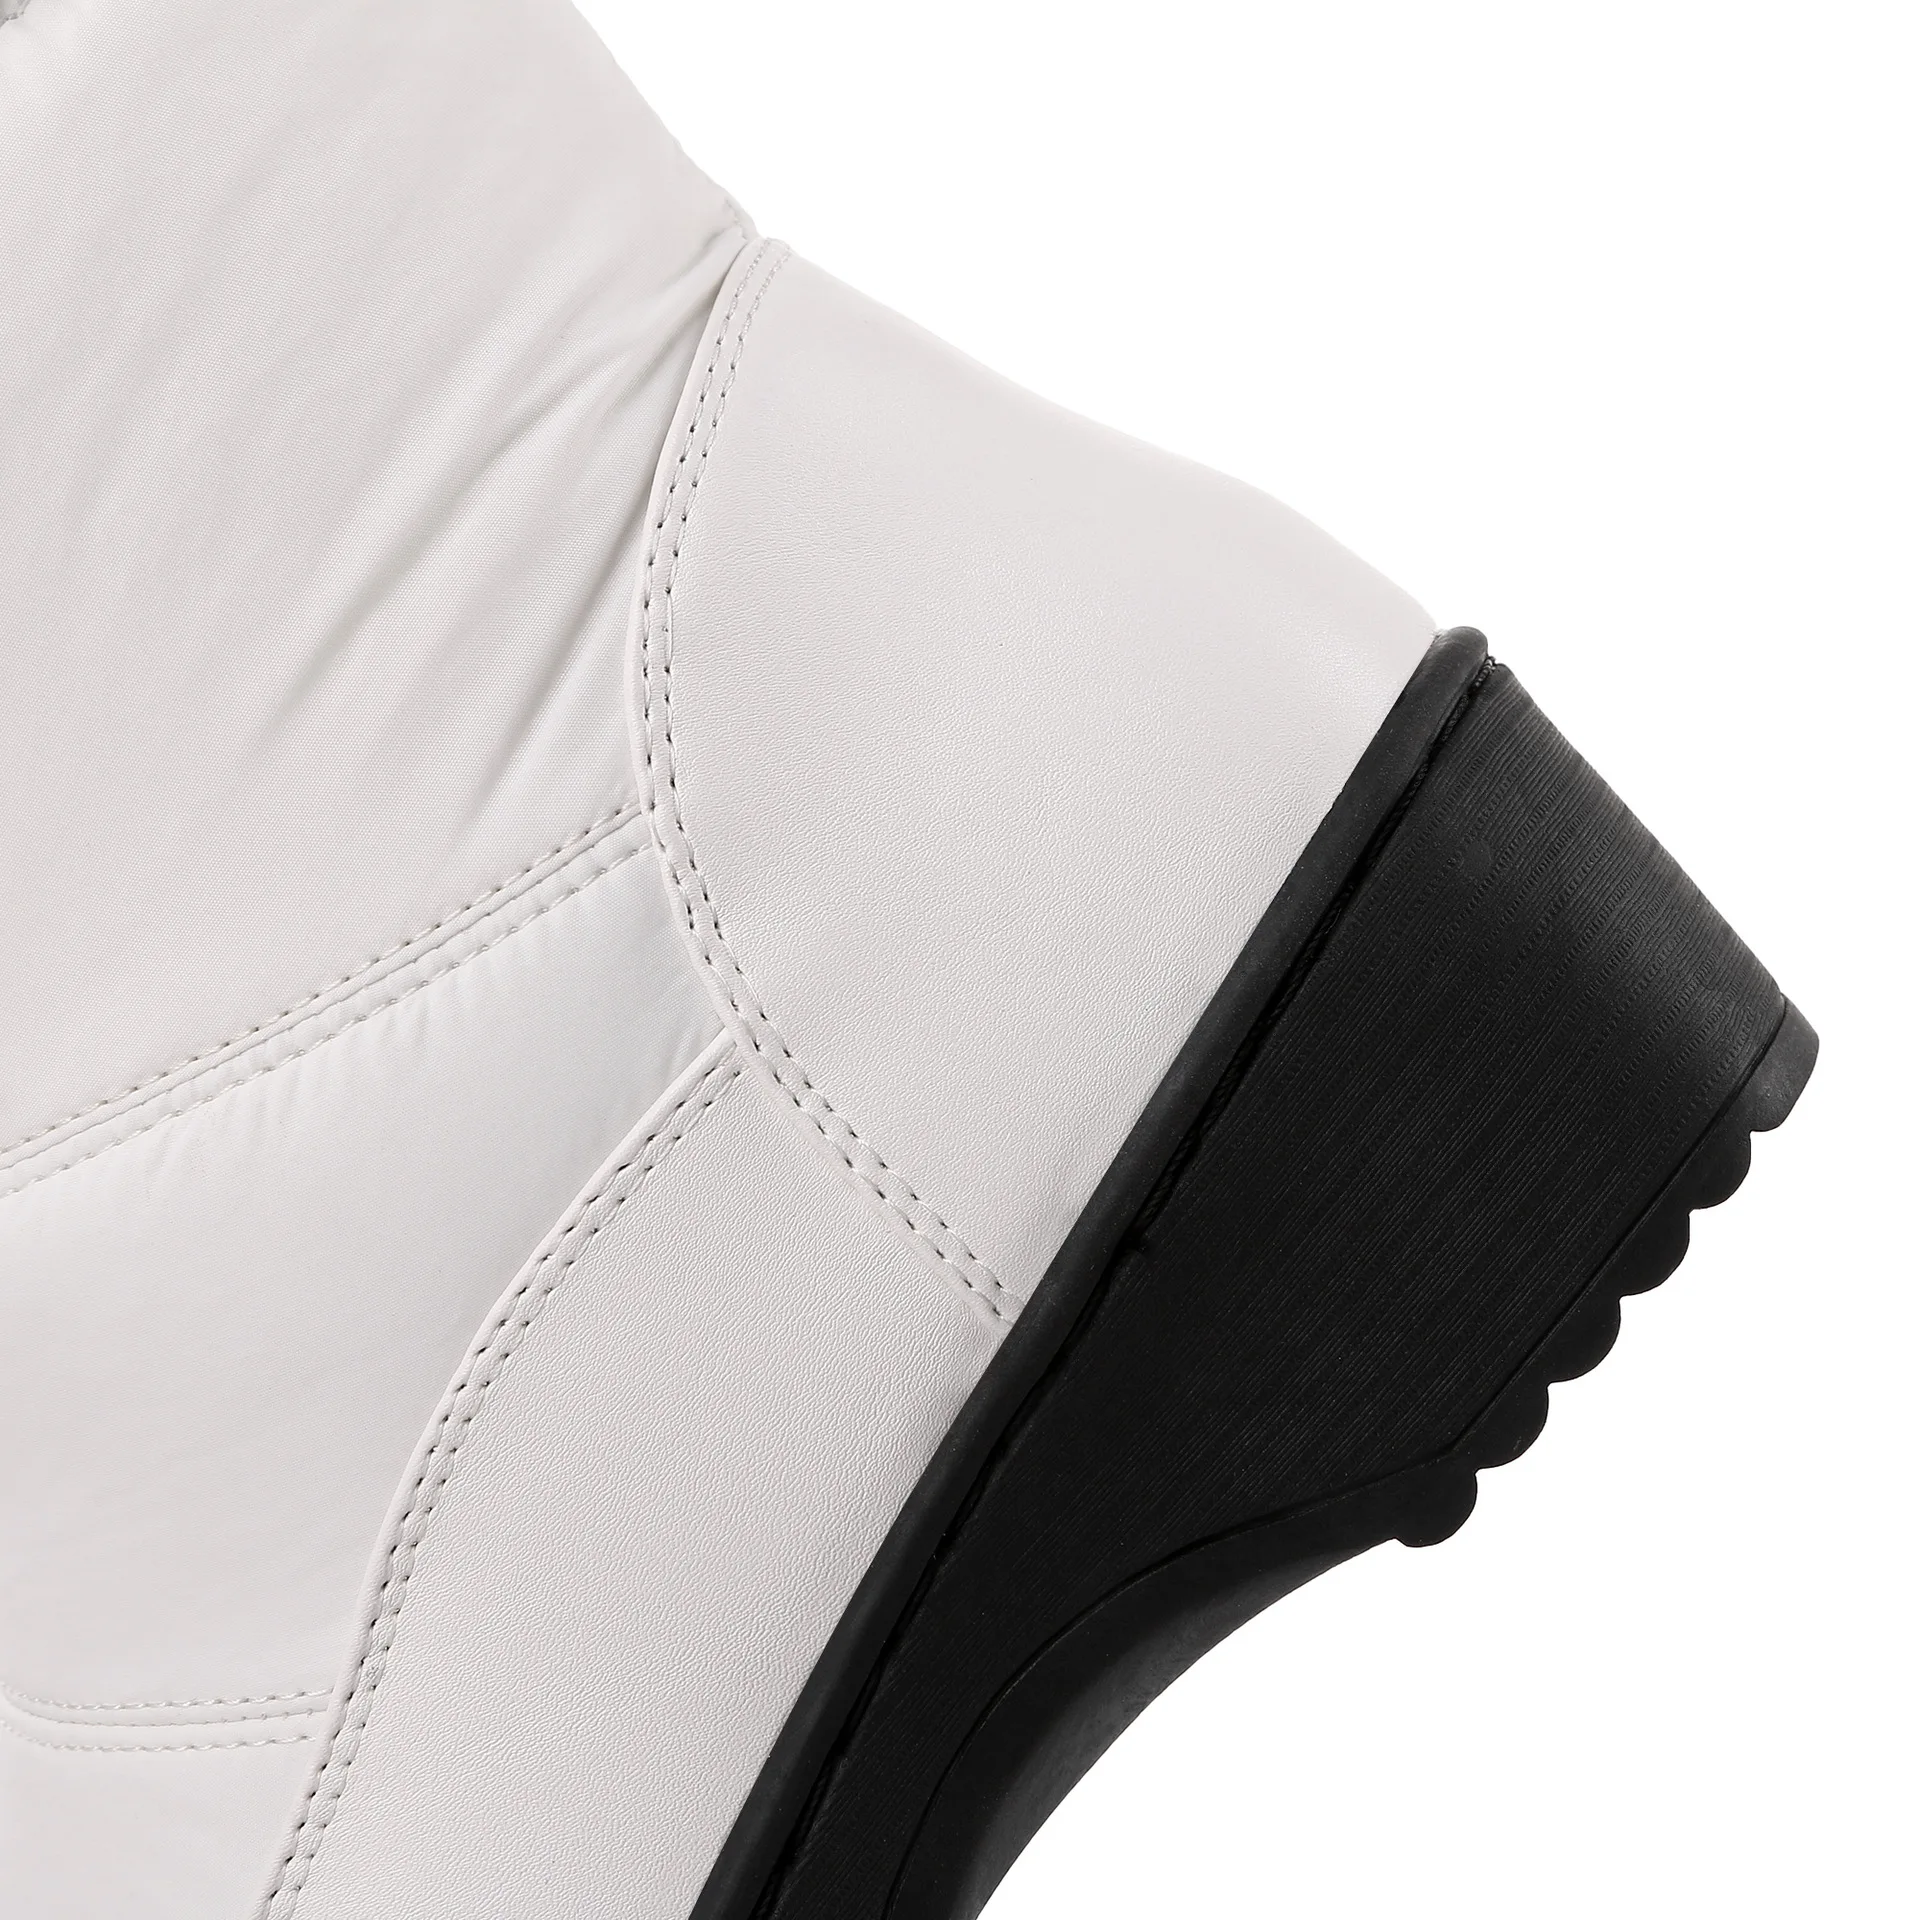 LTARTA зимние Для женщин обувь, теплые сапоги белого цвета обувь из материала на основе хлопка, с флисовой подкладкой, хлопковая плотная ботинки с мягкой подошвой сдобы торт снежные сапоги HX-85